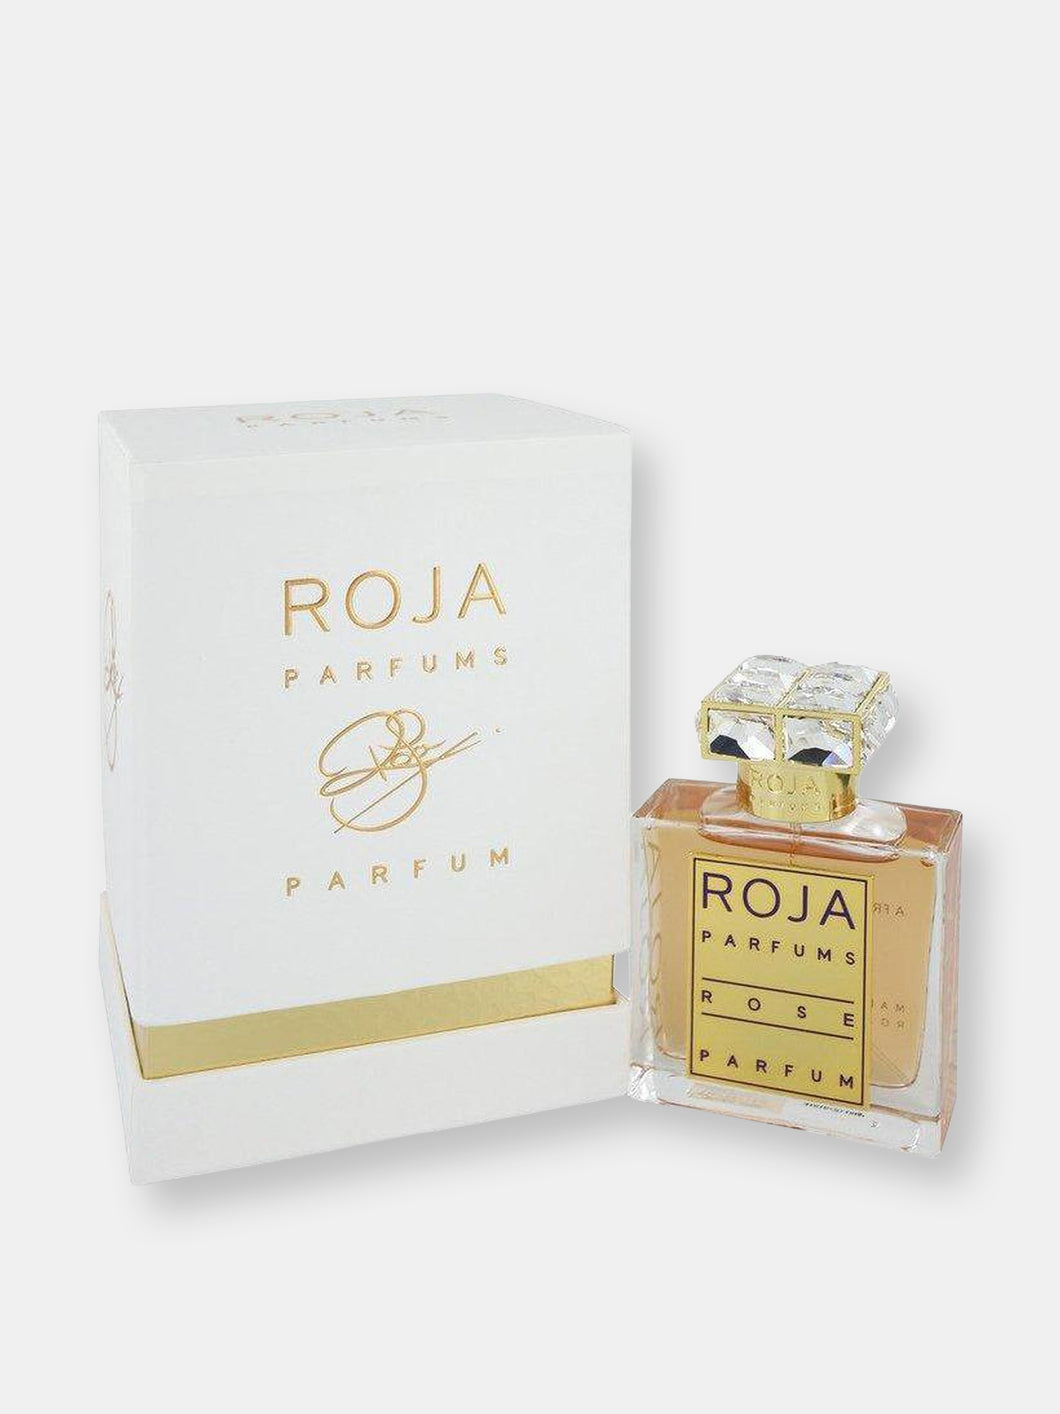 Roja Rose By Roja Parfums Extrait De Parfum Spray 1.7 oz